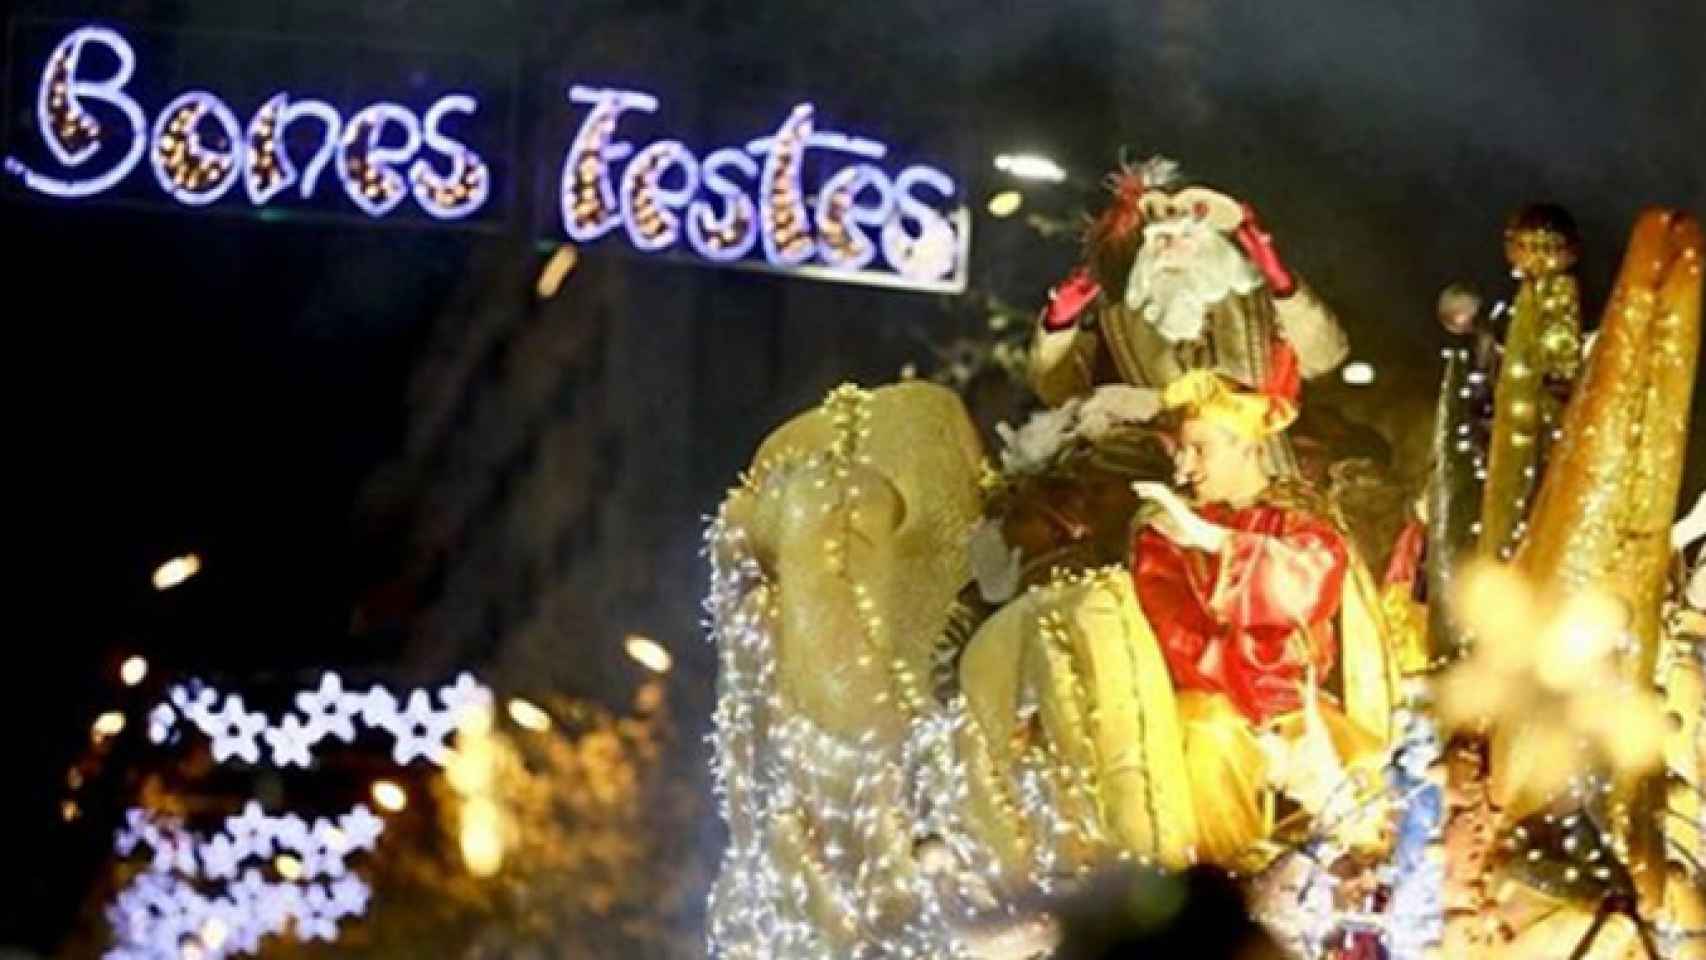 Una imagen de la Cabalgata de Reyes Magos de 2018 en Sabadell / AYTO. SABADELL